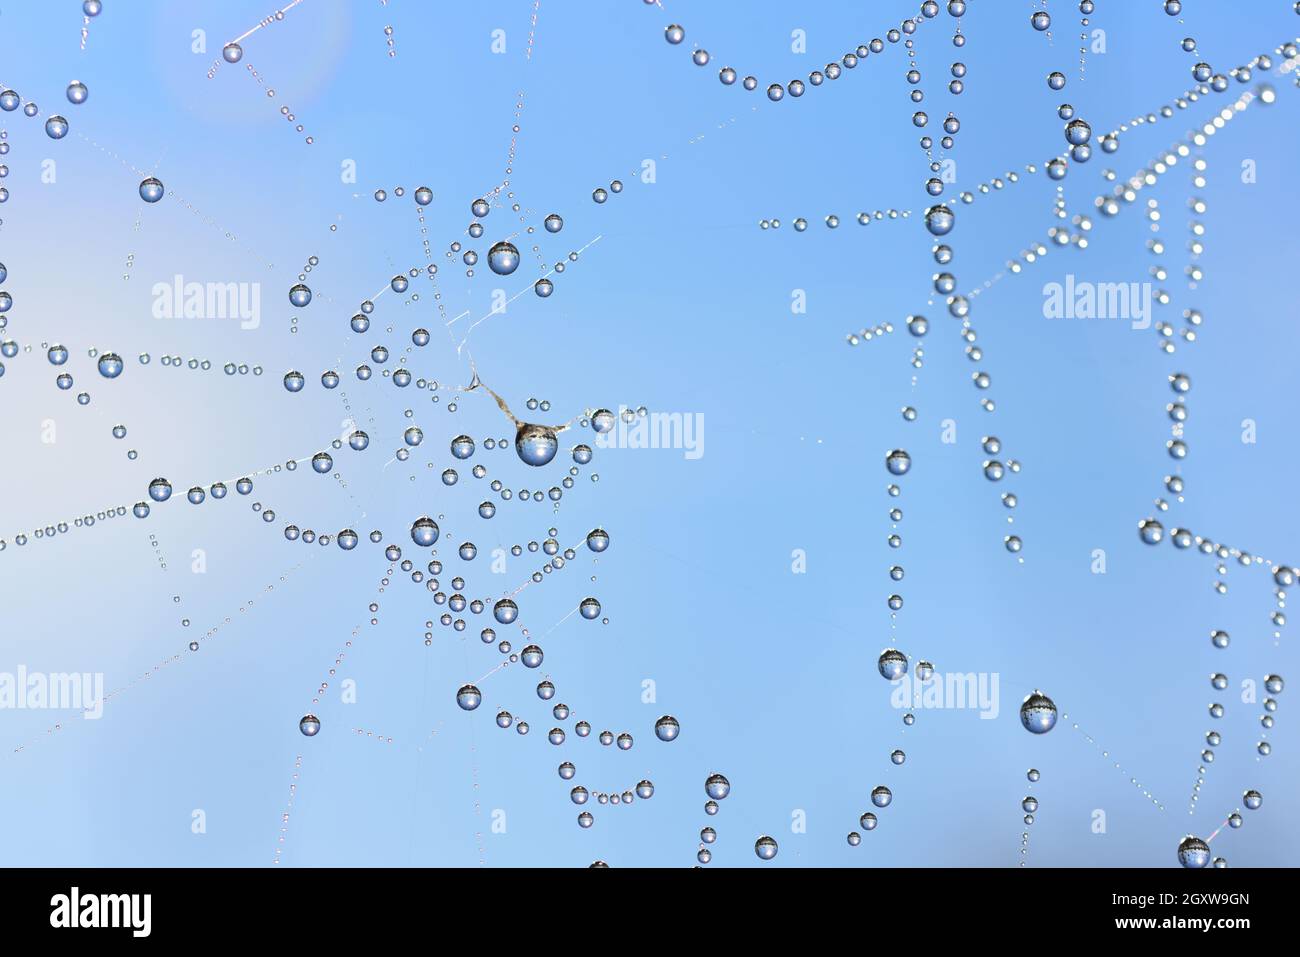 Gros plan de nombreuses gouttelettes d'eau accrochées sur une toile d'araignée contre un ciel bleu Banque D'Images